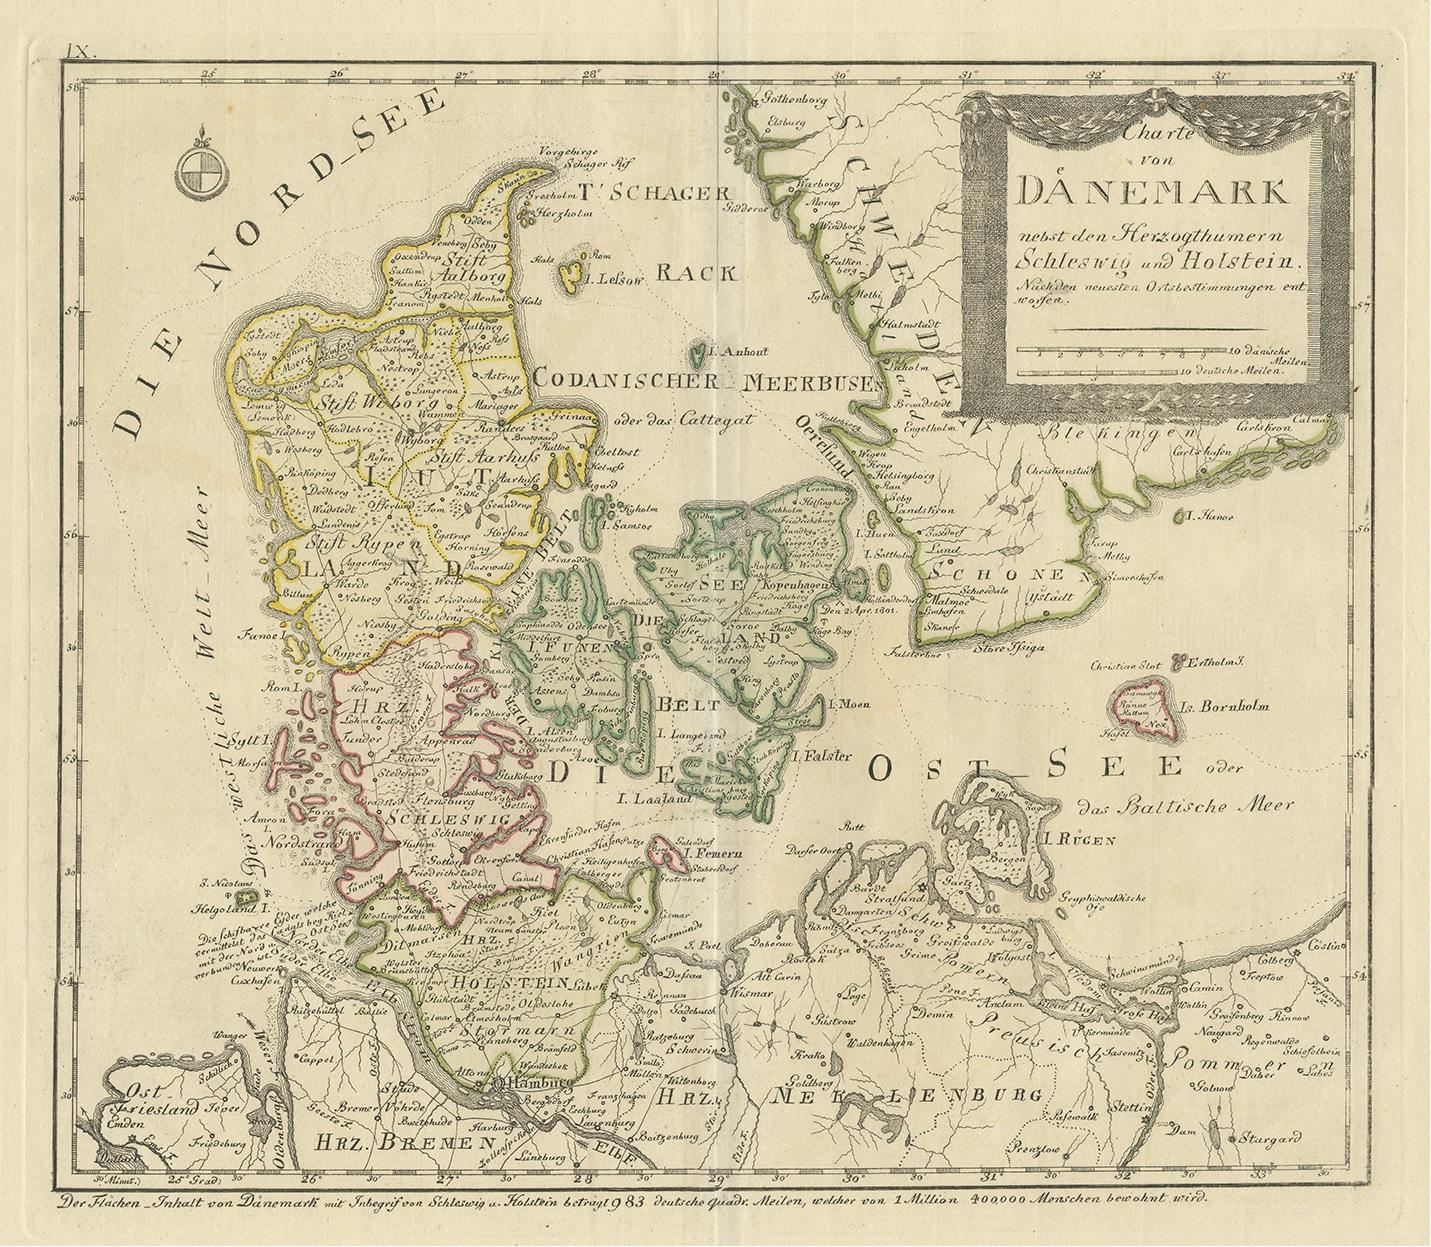 Antique map titled 'Charte von Daenemark nebst den Herzogthumern Schleswig und Holstein'. Rare and uncommon map of Denmark. Source unknown, to be determined. Published circa 1800.